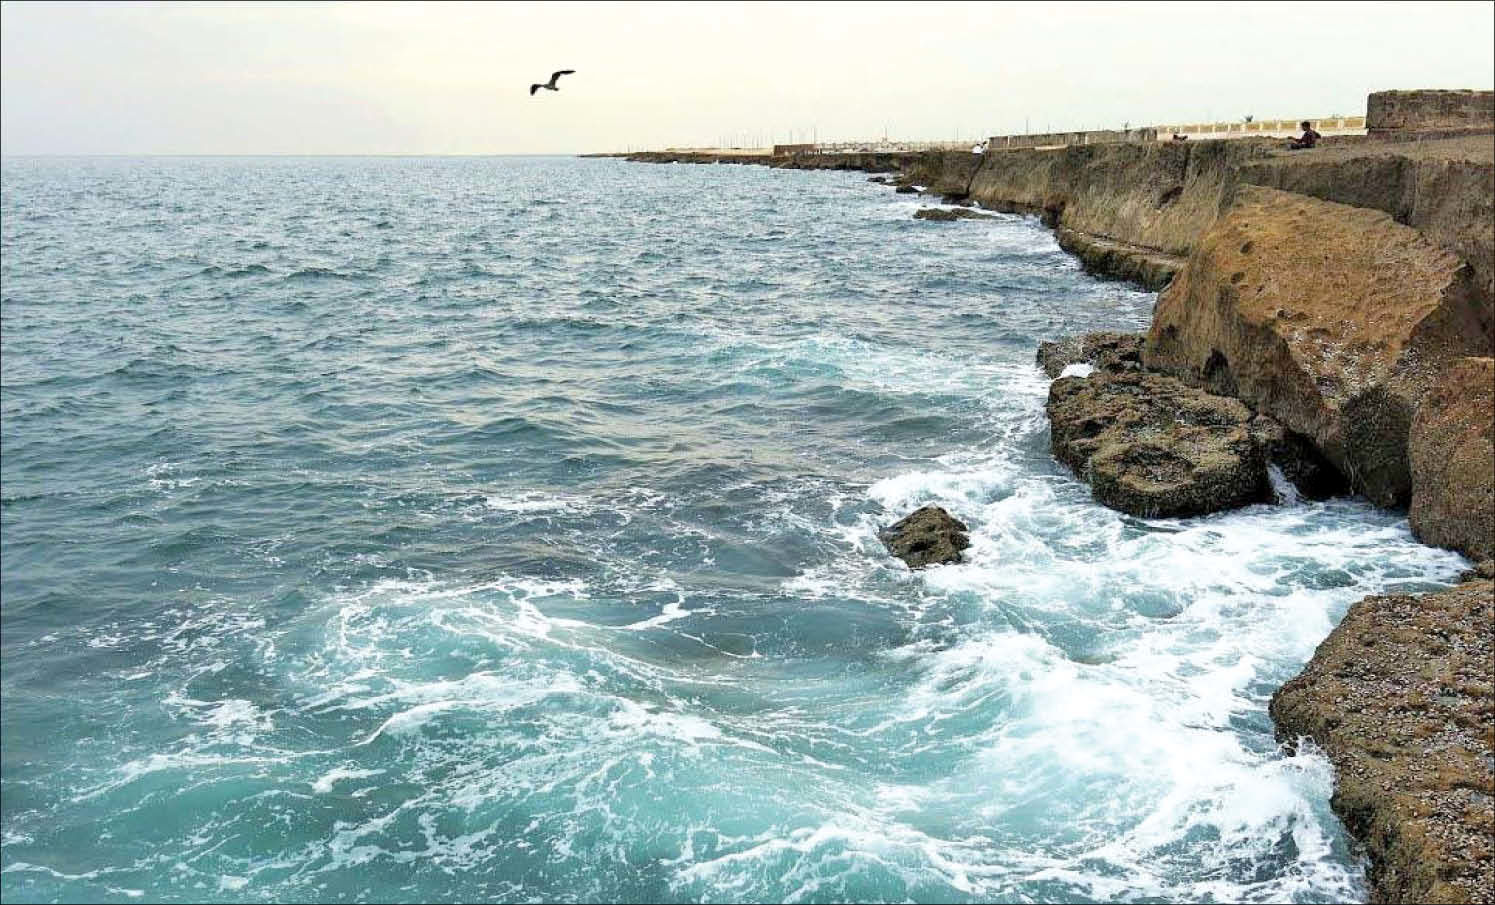 مدیریت بحران: مردم از فعالیت دریایی درخلیج فارس، تنگه هرمز و دریای عمان خودداری کنند